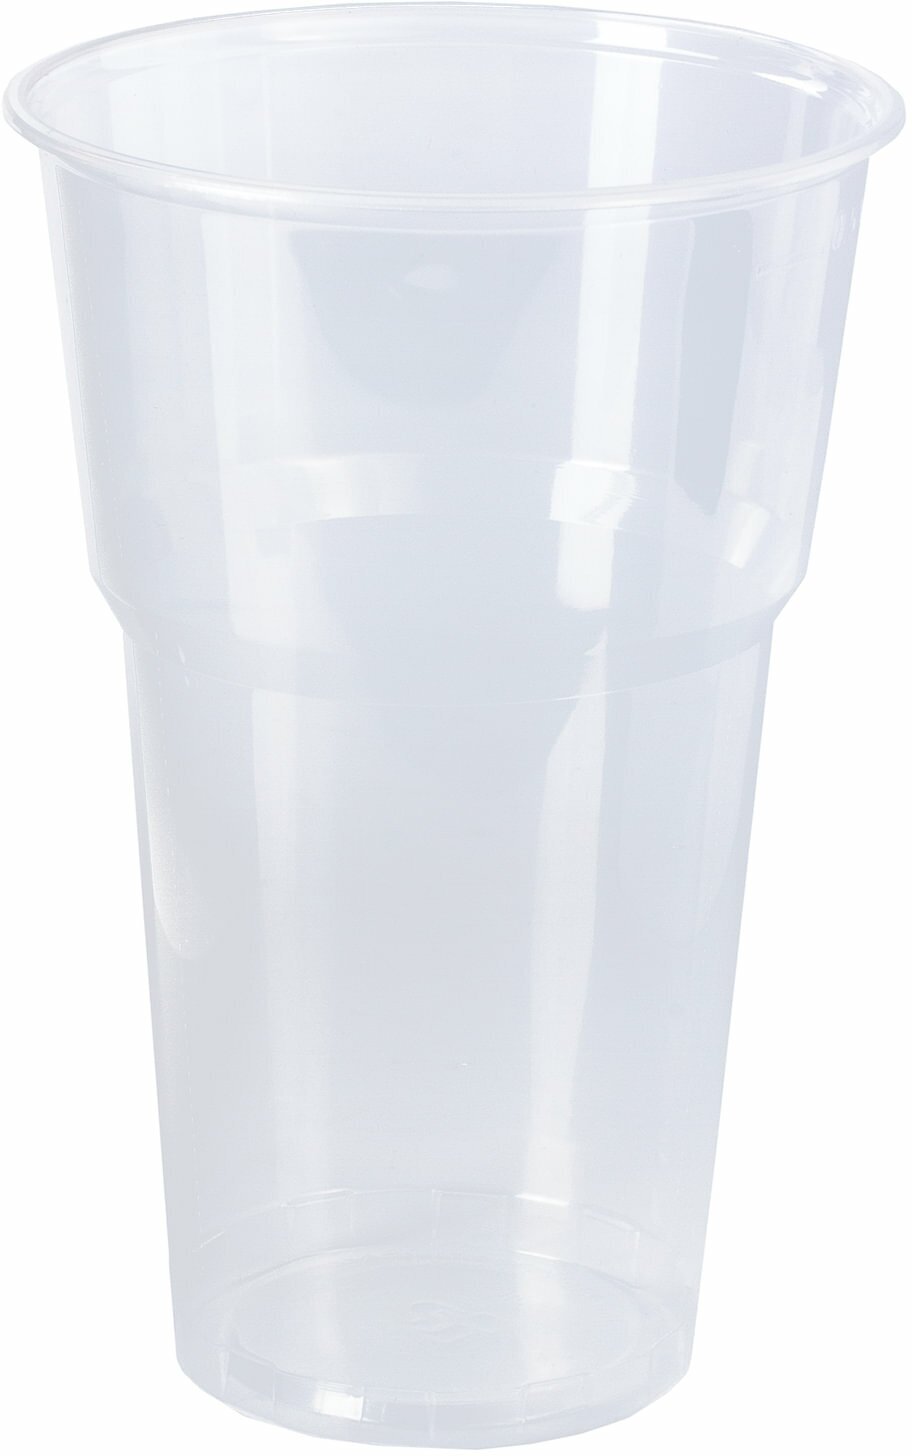 Одноразовые стаканы Лайма 500 мл, 20 шт, пластиковые "Бюджет" прозрачные, холодное, горячее (600939)